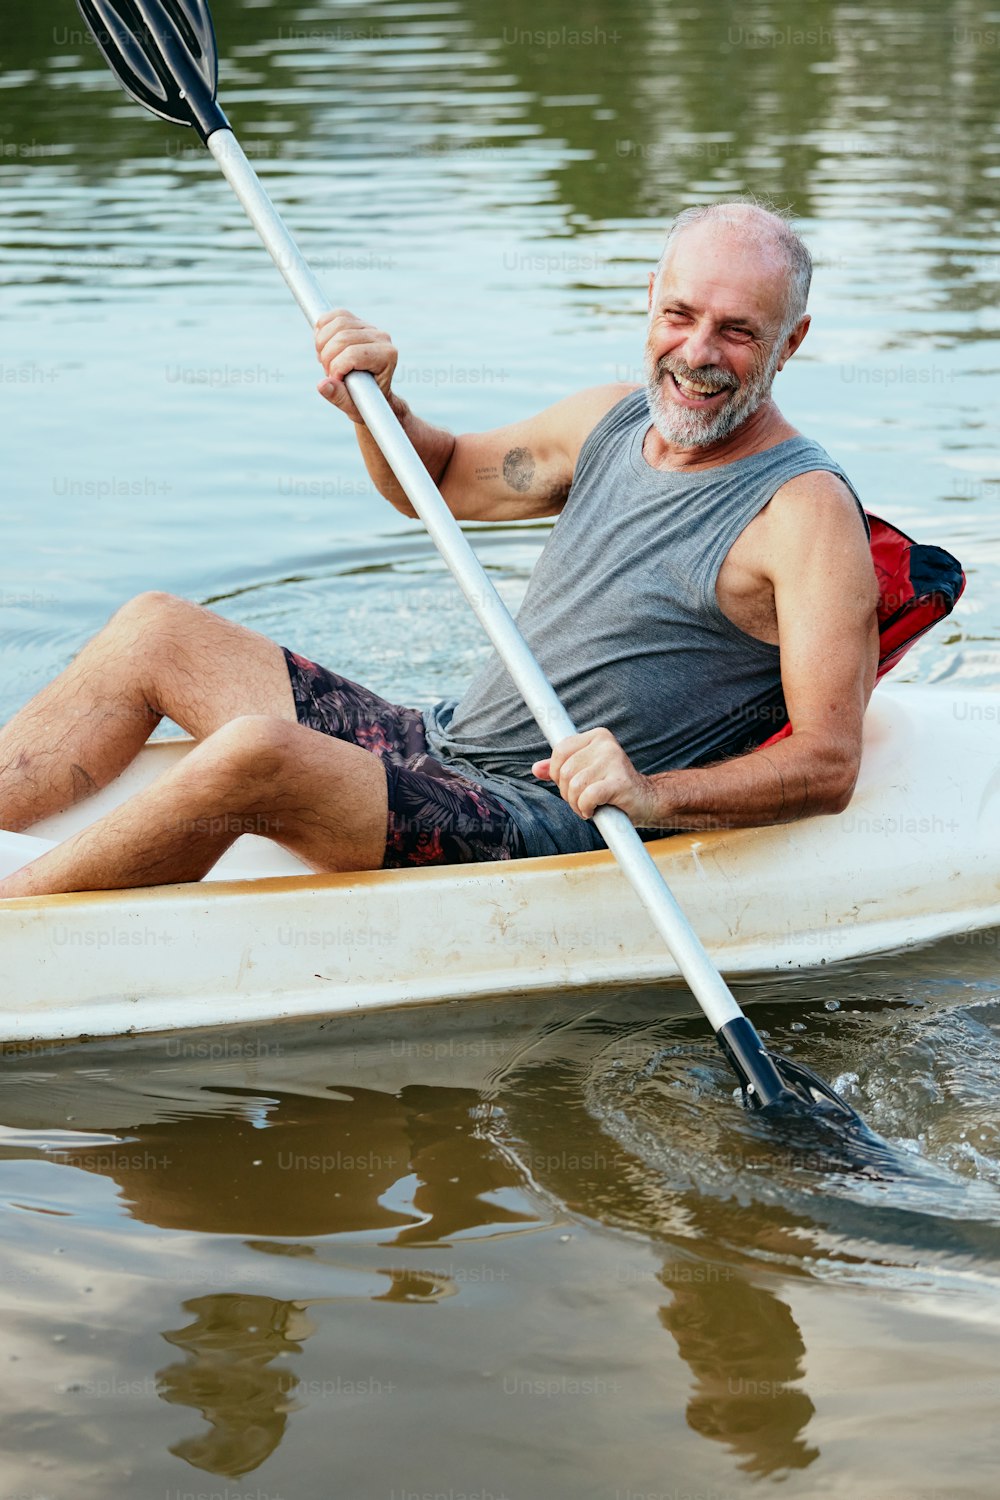 한 남자가 물 위에서 카누를 젓고 있다